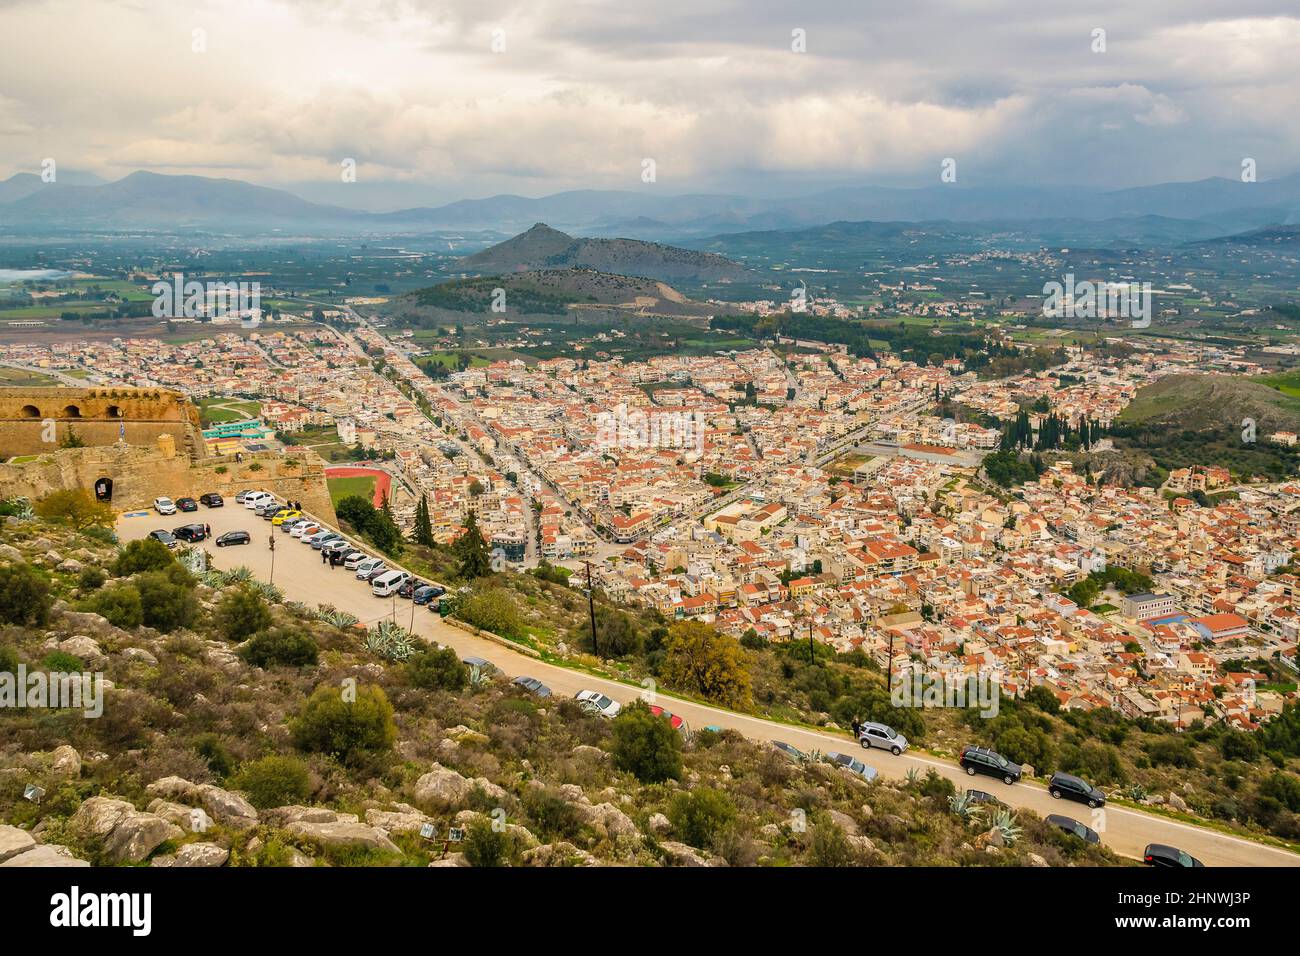 Vue aérienne sur le paysage urbain depuis le fort de palamidi de la ville de nafplion, péloponnèse, grèce Banque D'Images